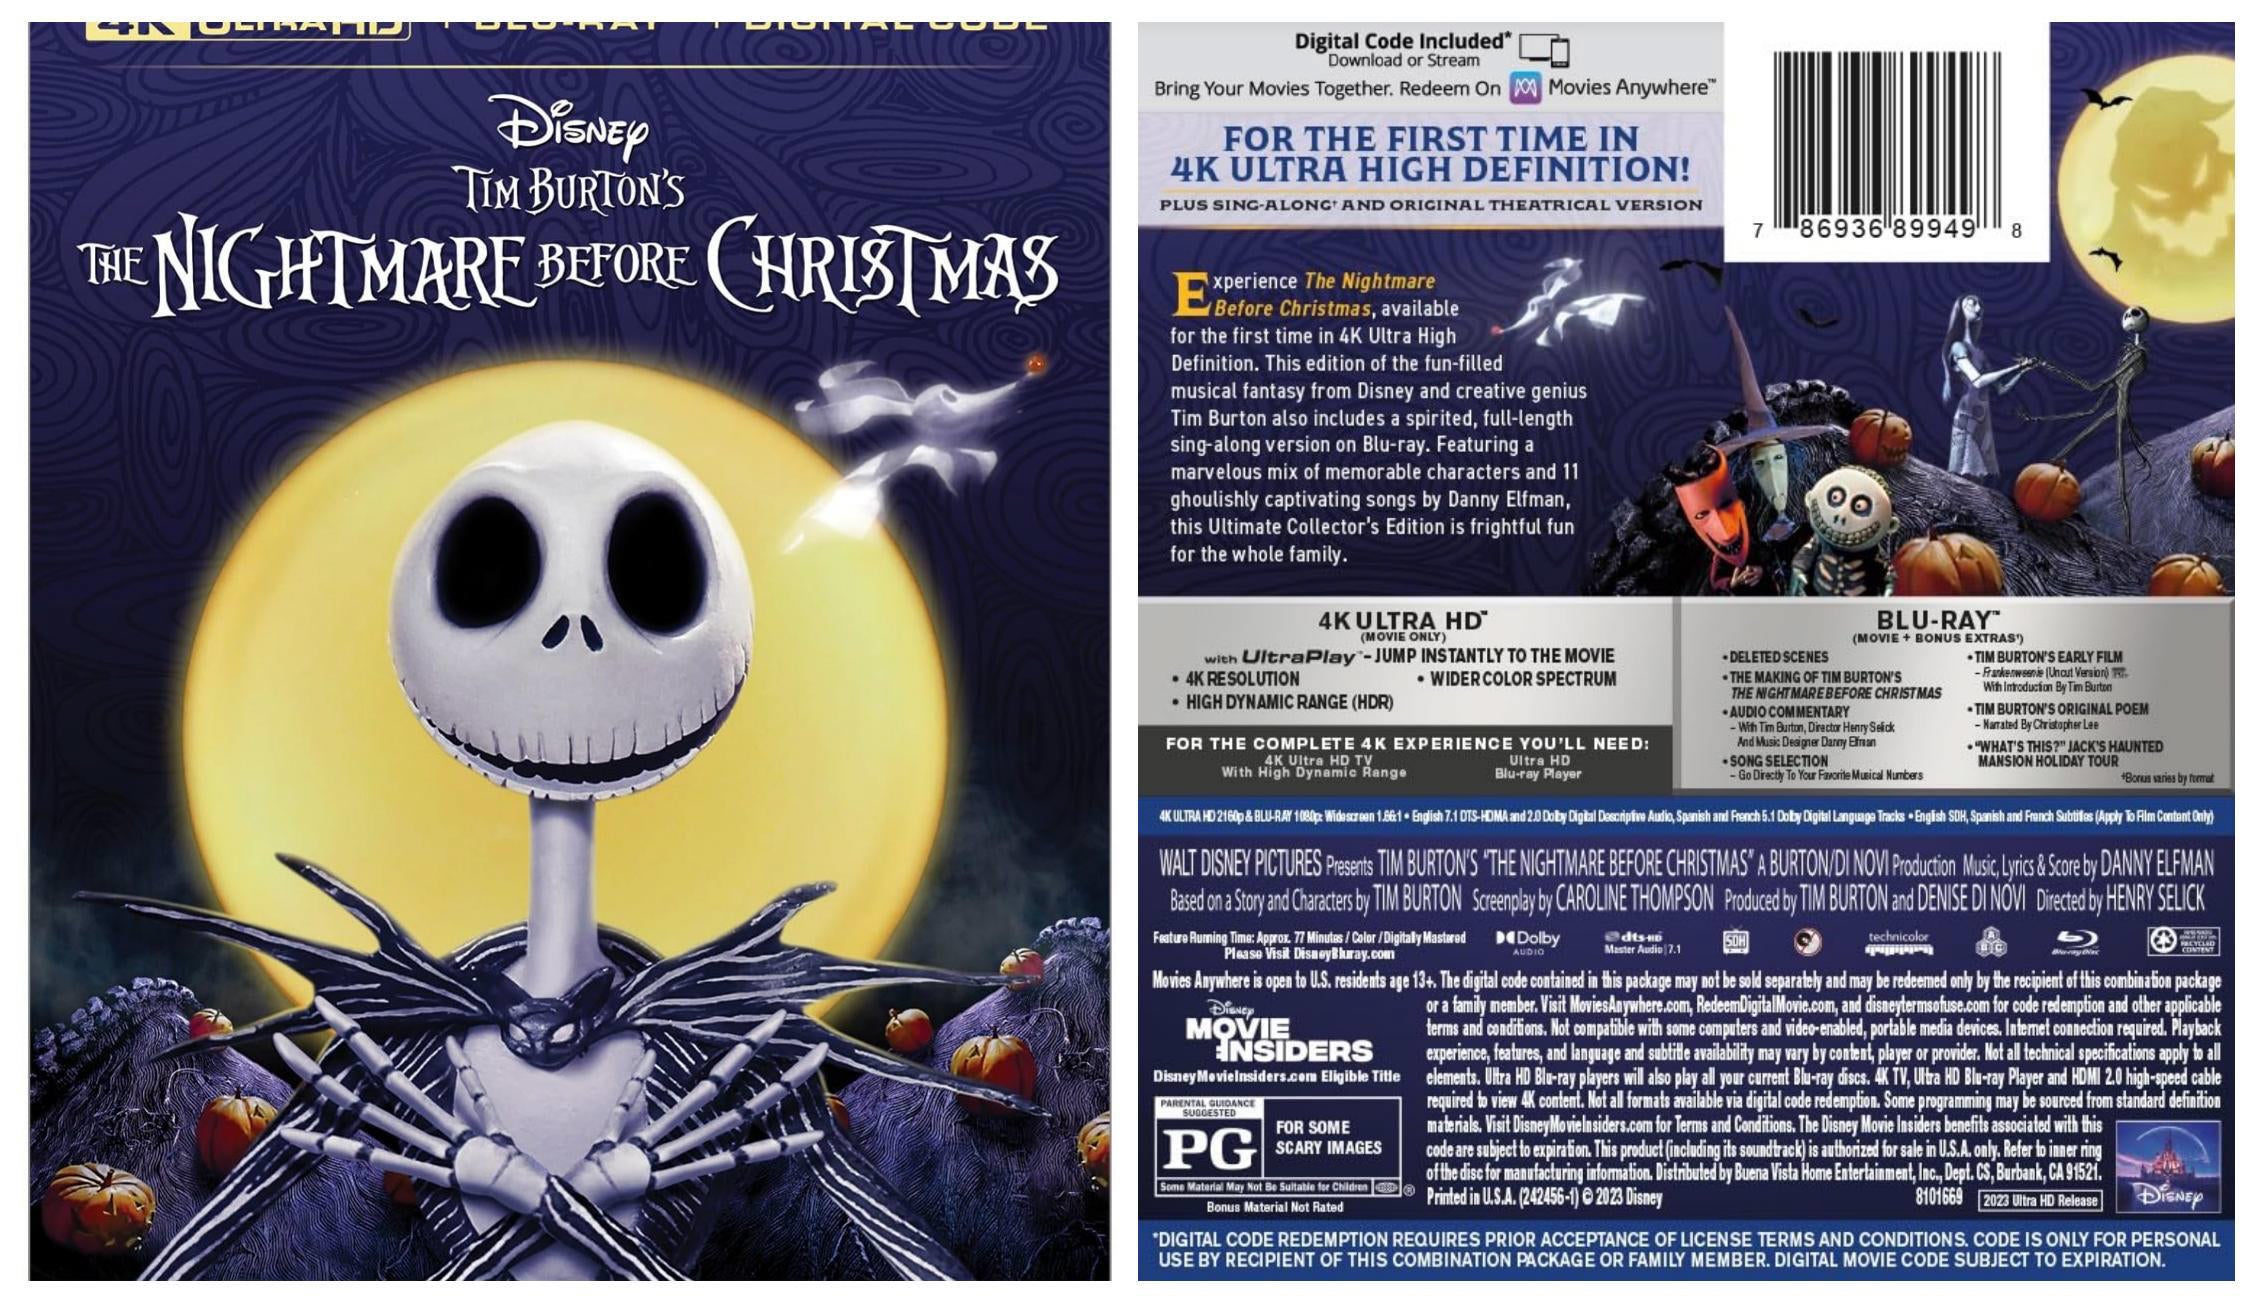 Tim Burton's The Nightmare Before Christmas : Nightmare Before Christmas:  Movies & TV 